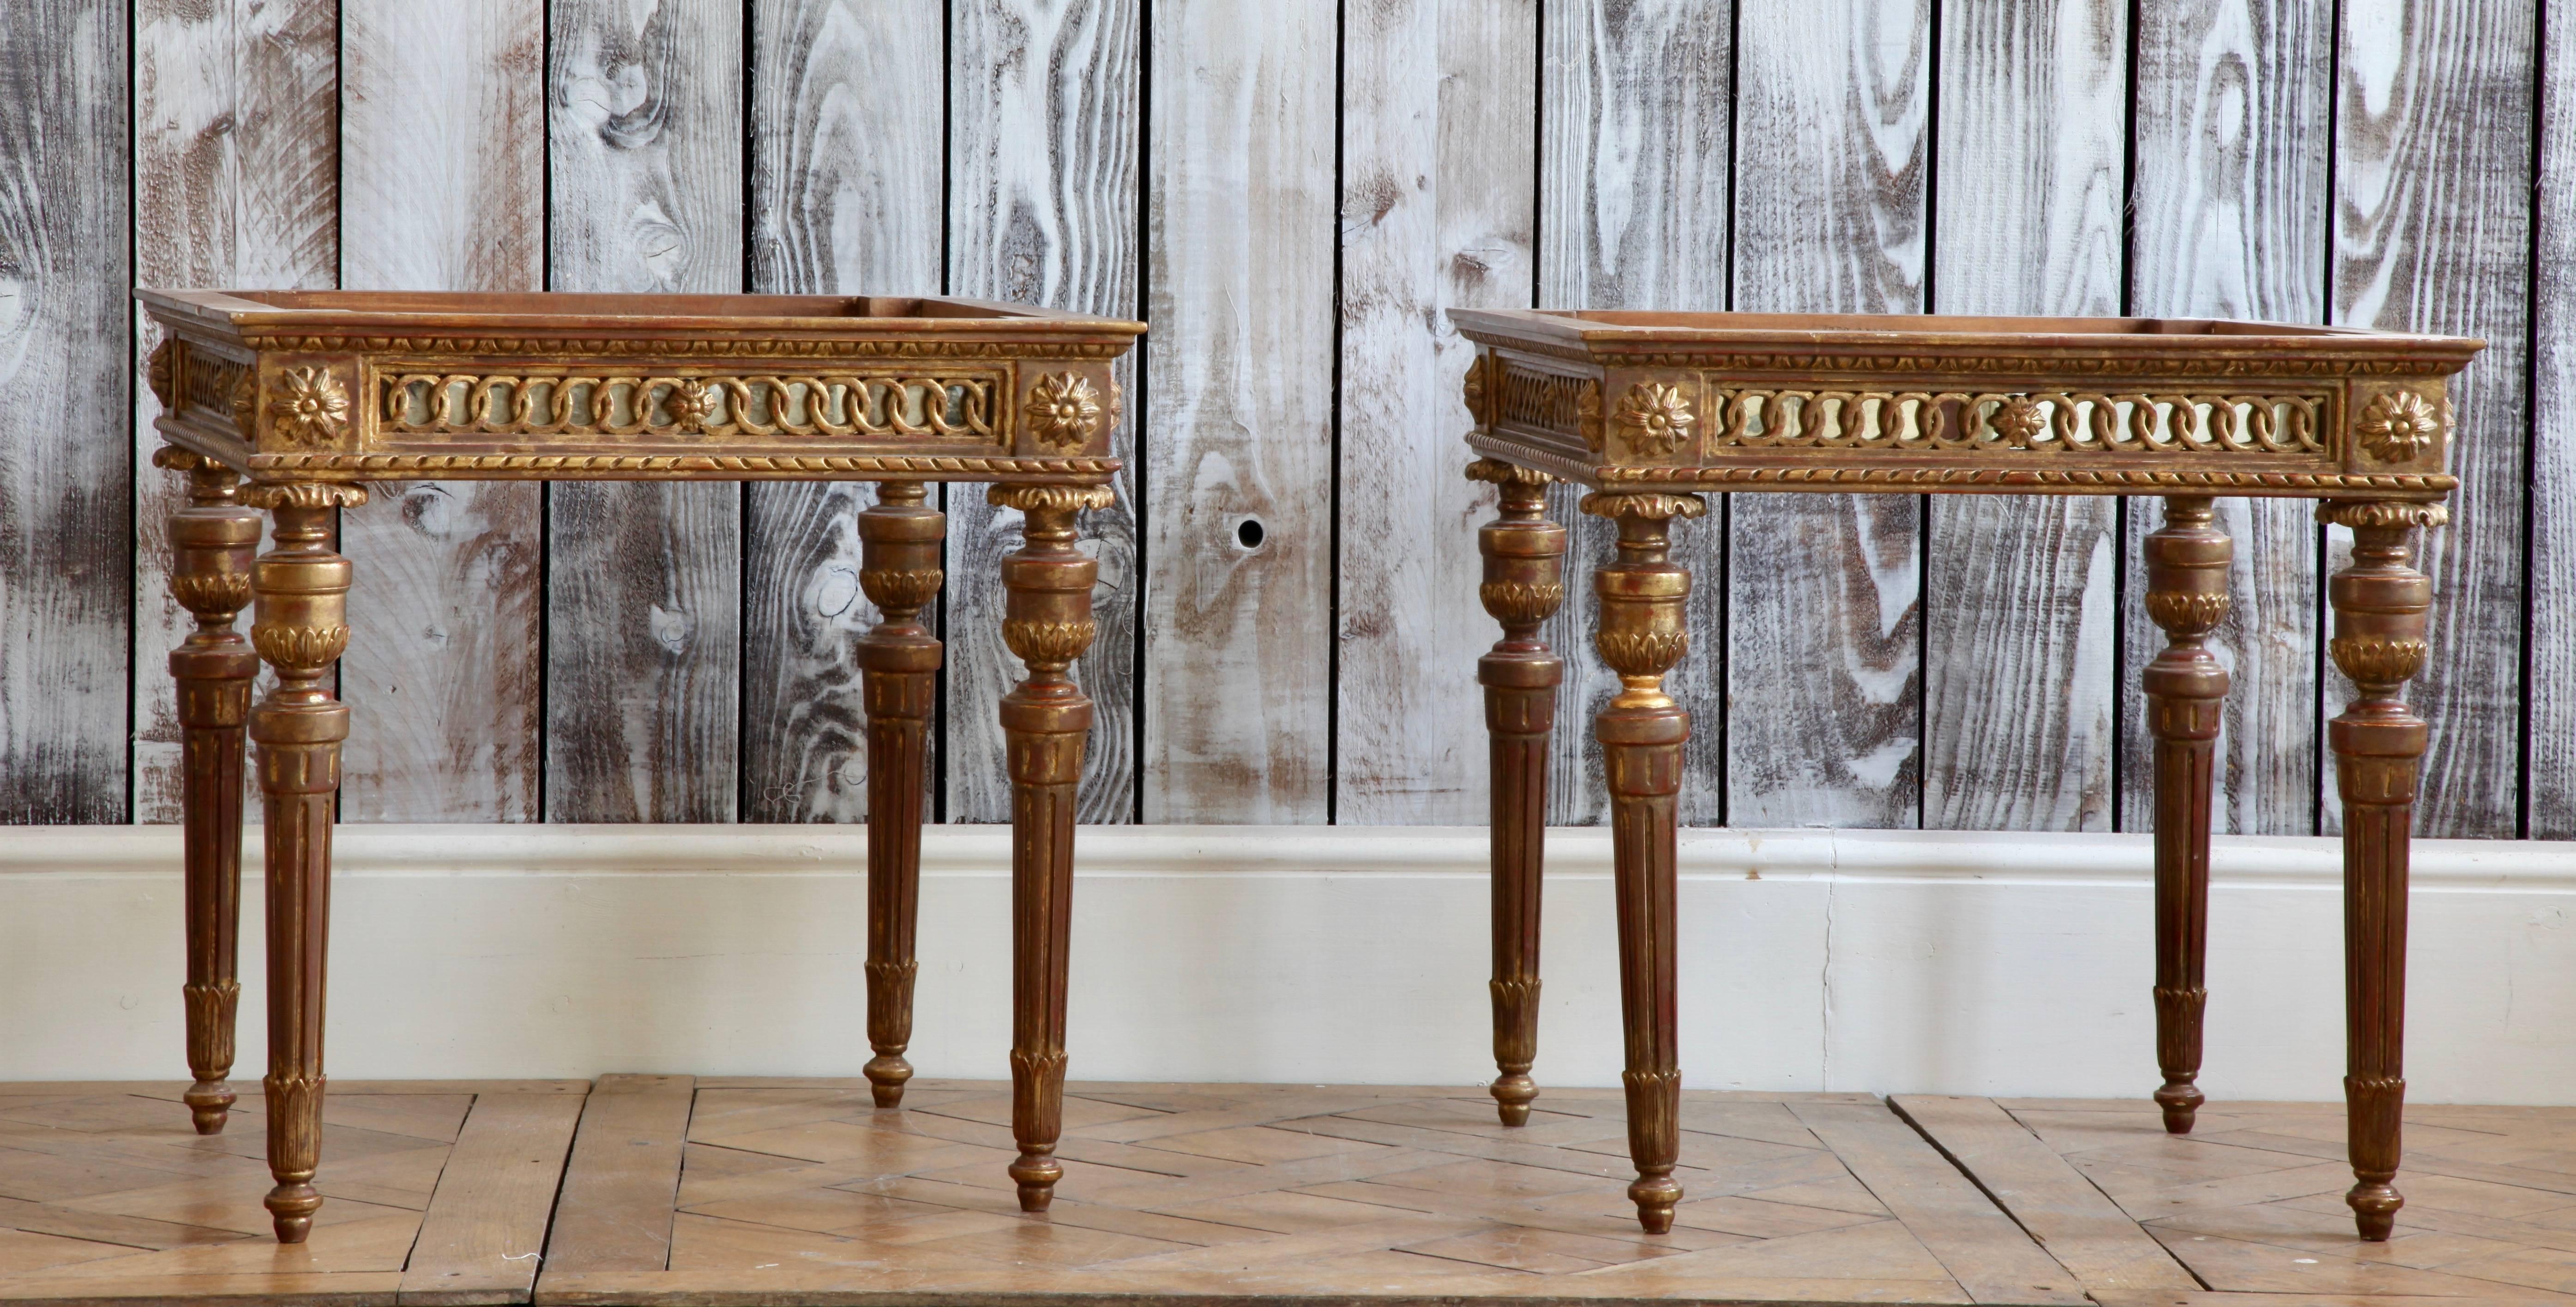 Mesas de centro / auxiliares de madera dorada estilo Luis XVI talladas a mano en madera maciza.
Finos detalles con filigrana trabajada respaldados con un cristal de espejo envejecido (Similar al trabajo veneciano encontrado en el siglo XVIII).
Las